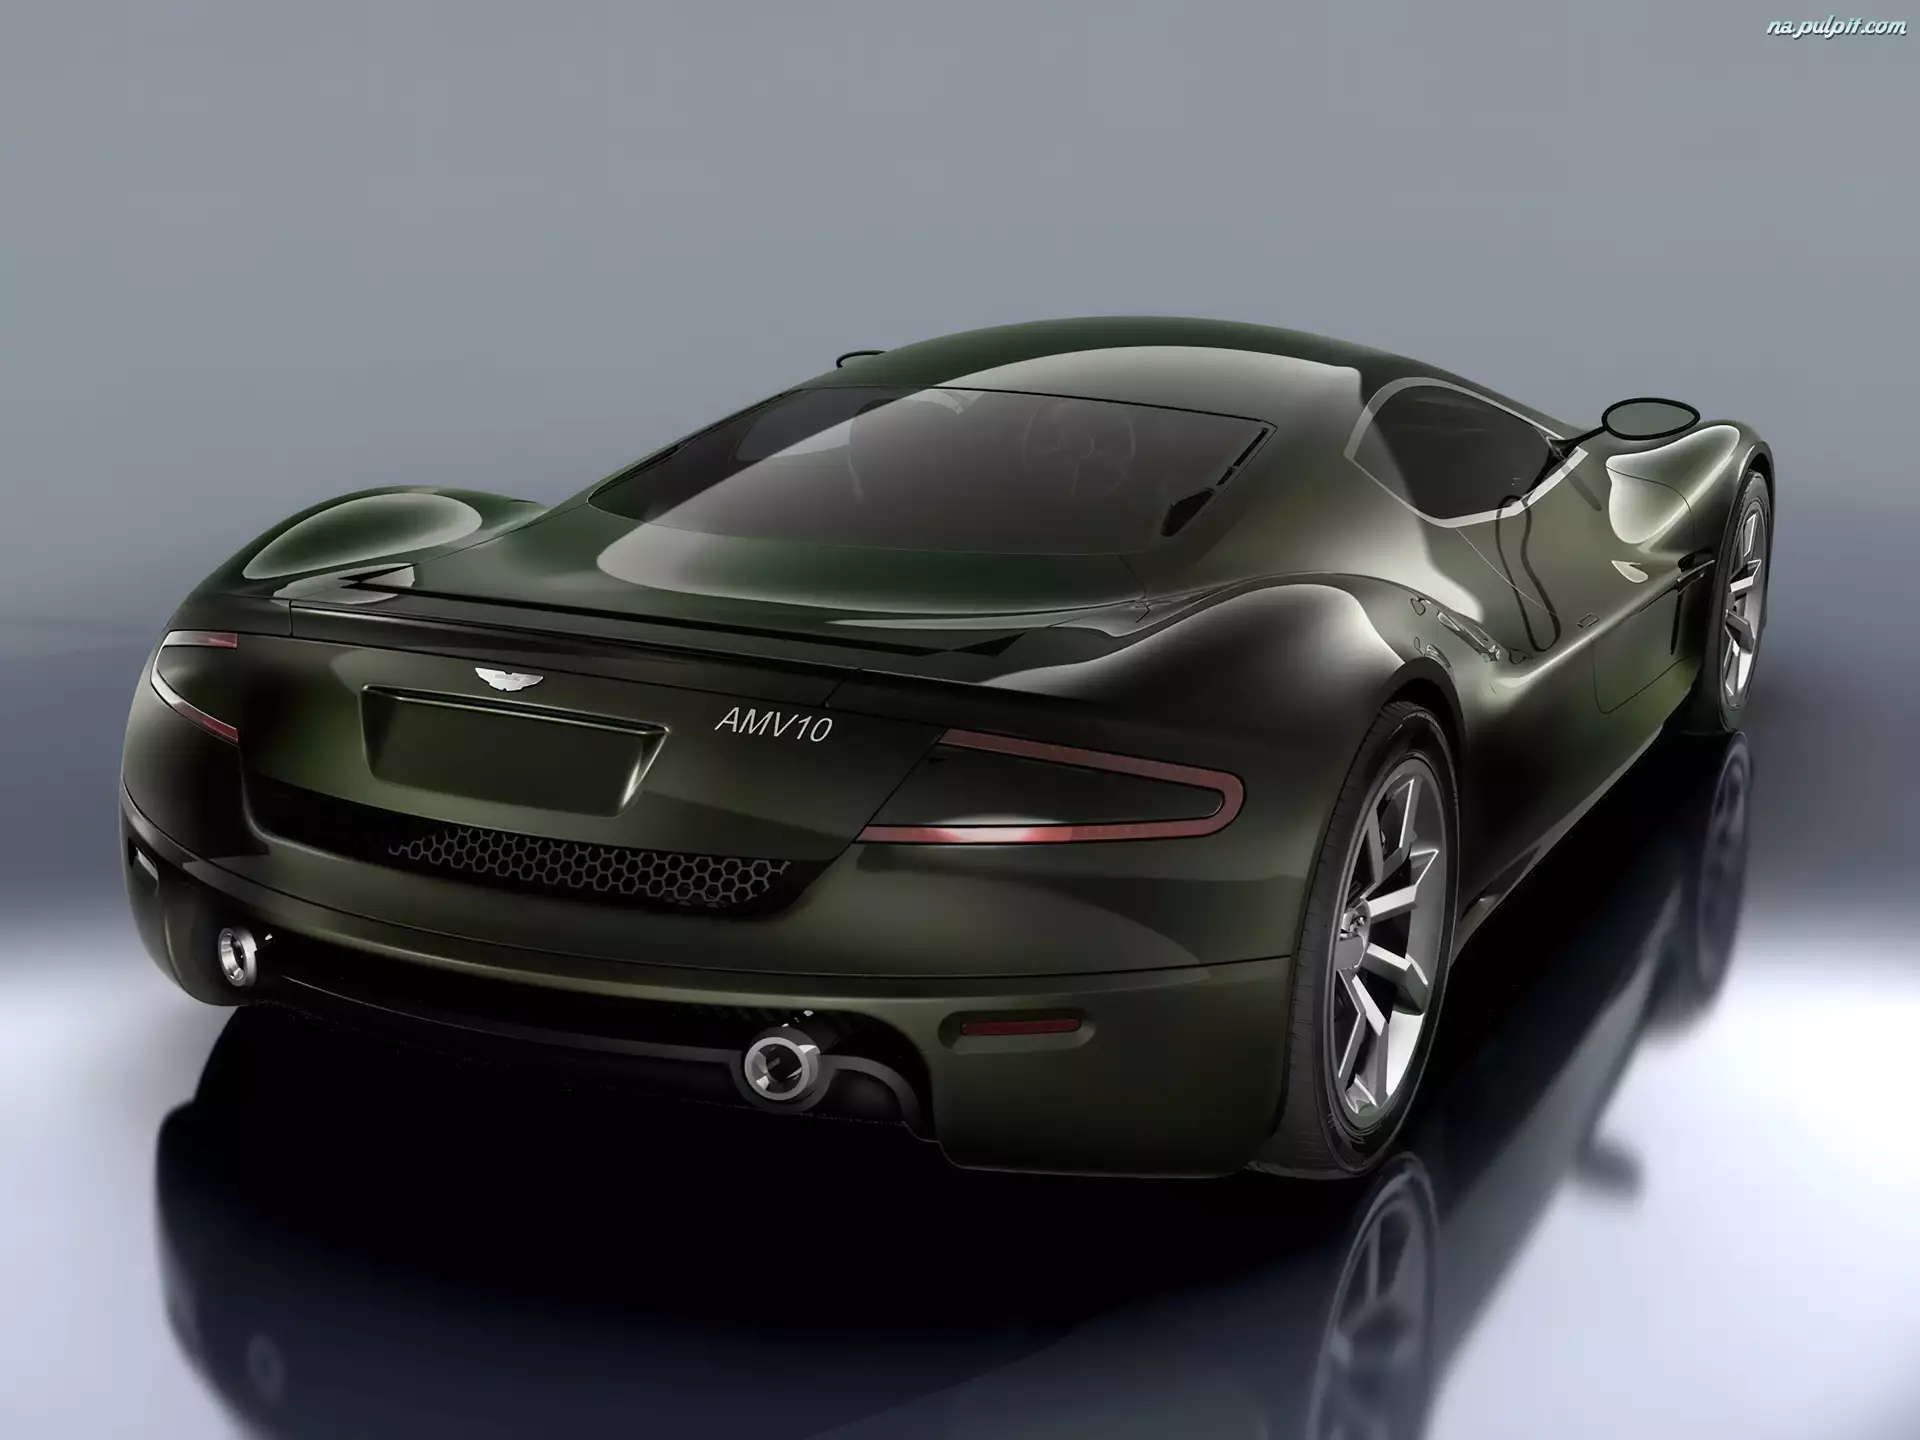 AMV10, Aston Martin, Logo